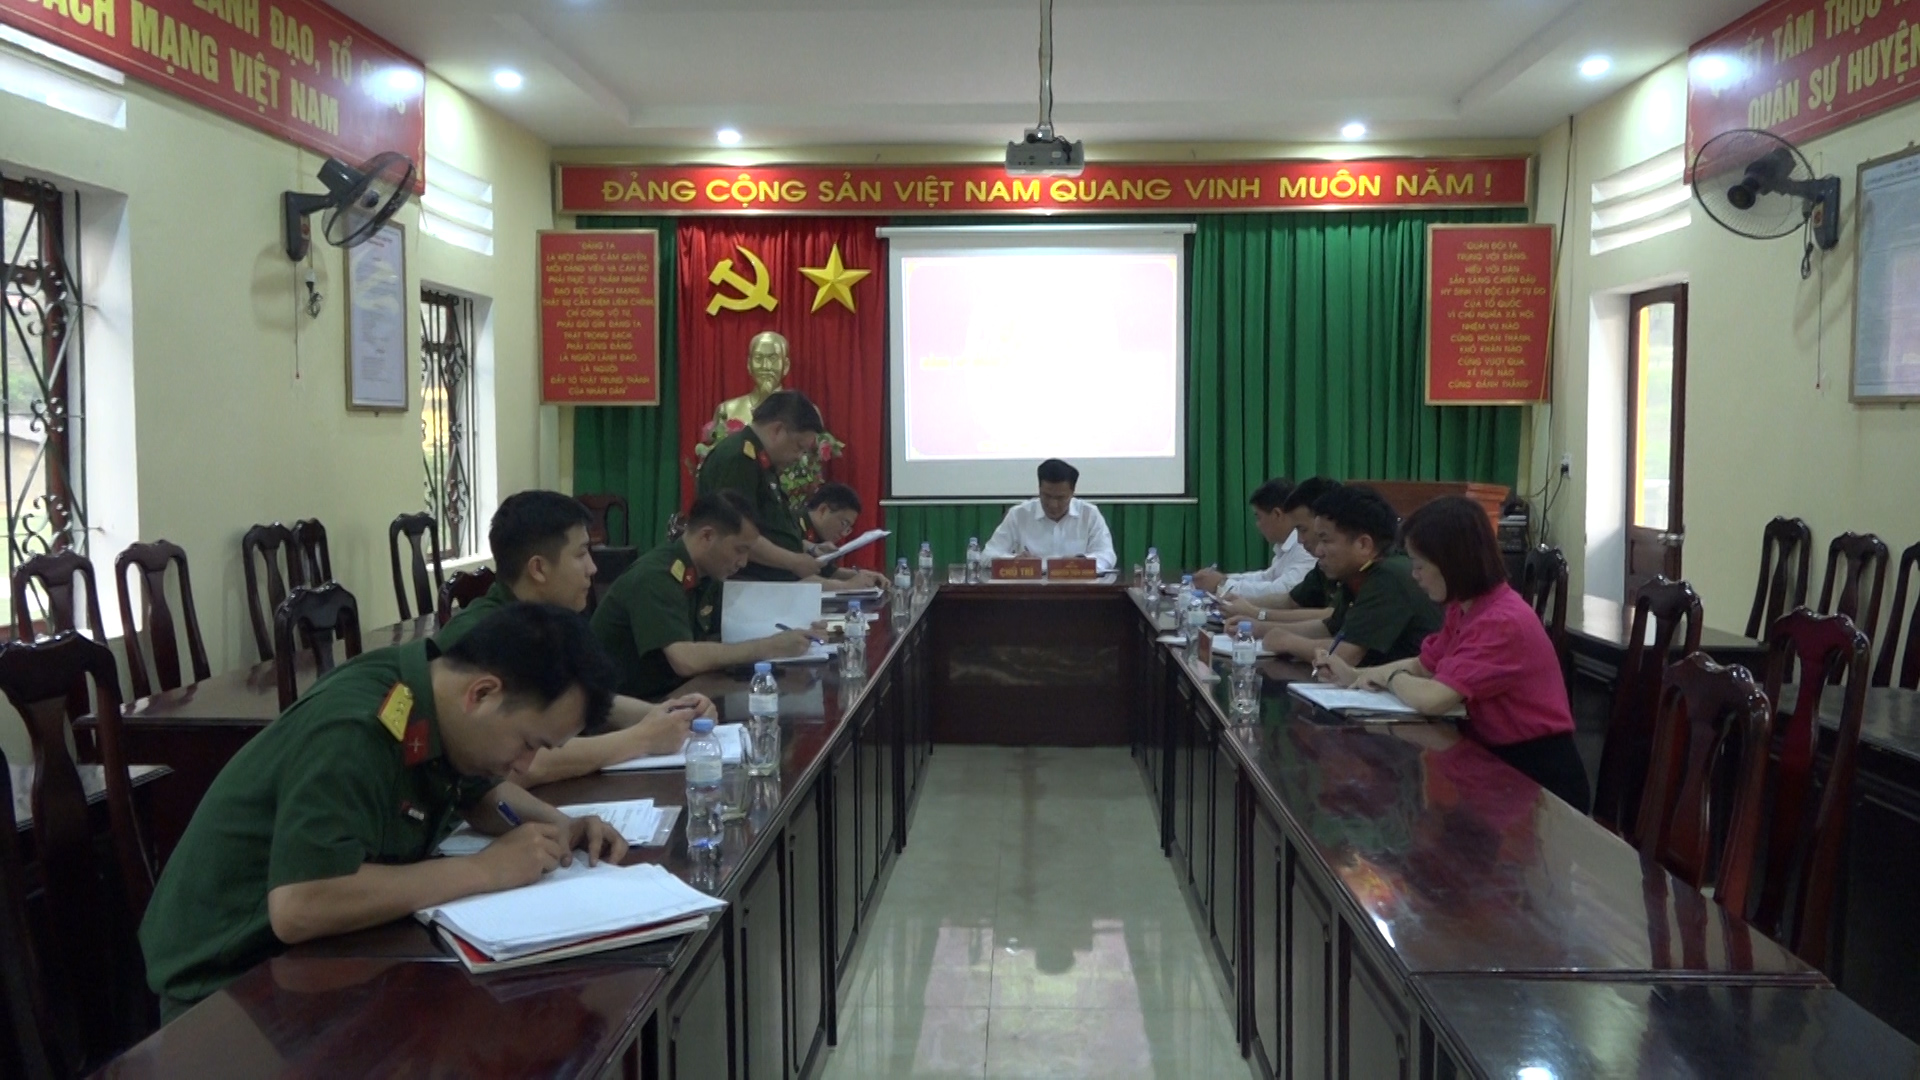 Hội nghị Đảng ủy Quân sự huyện Đồng Văn